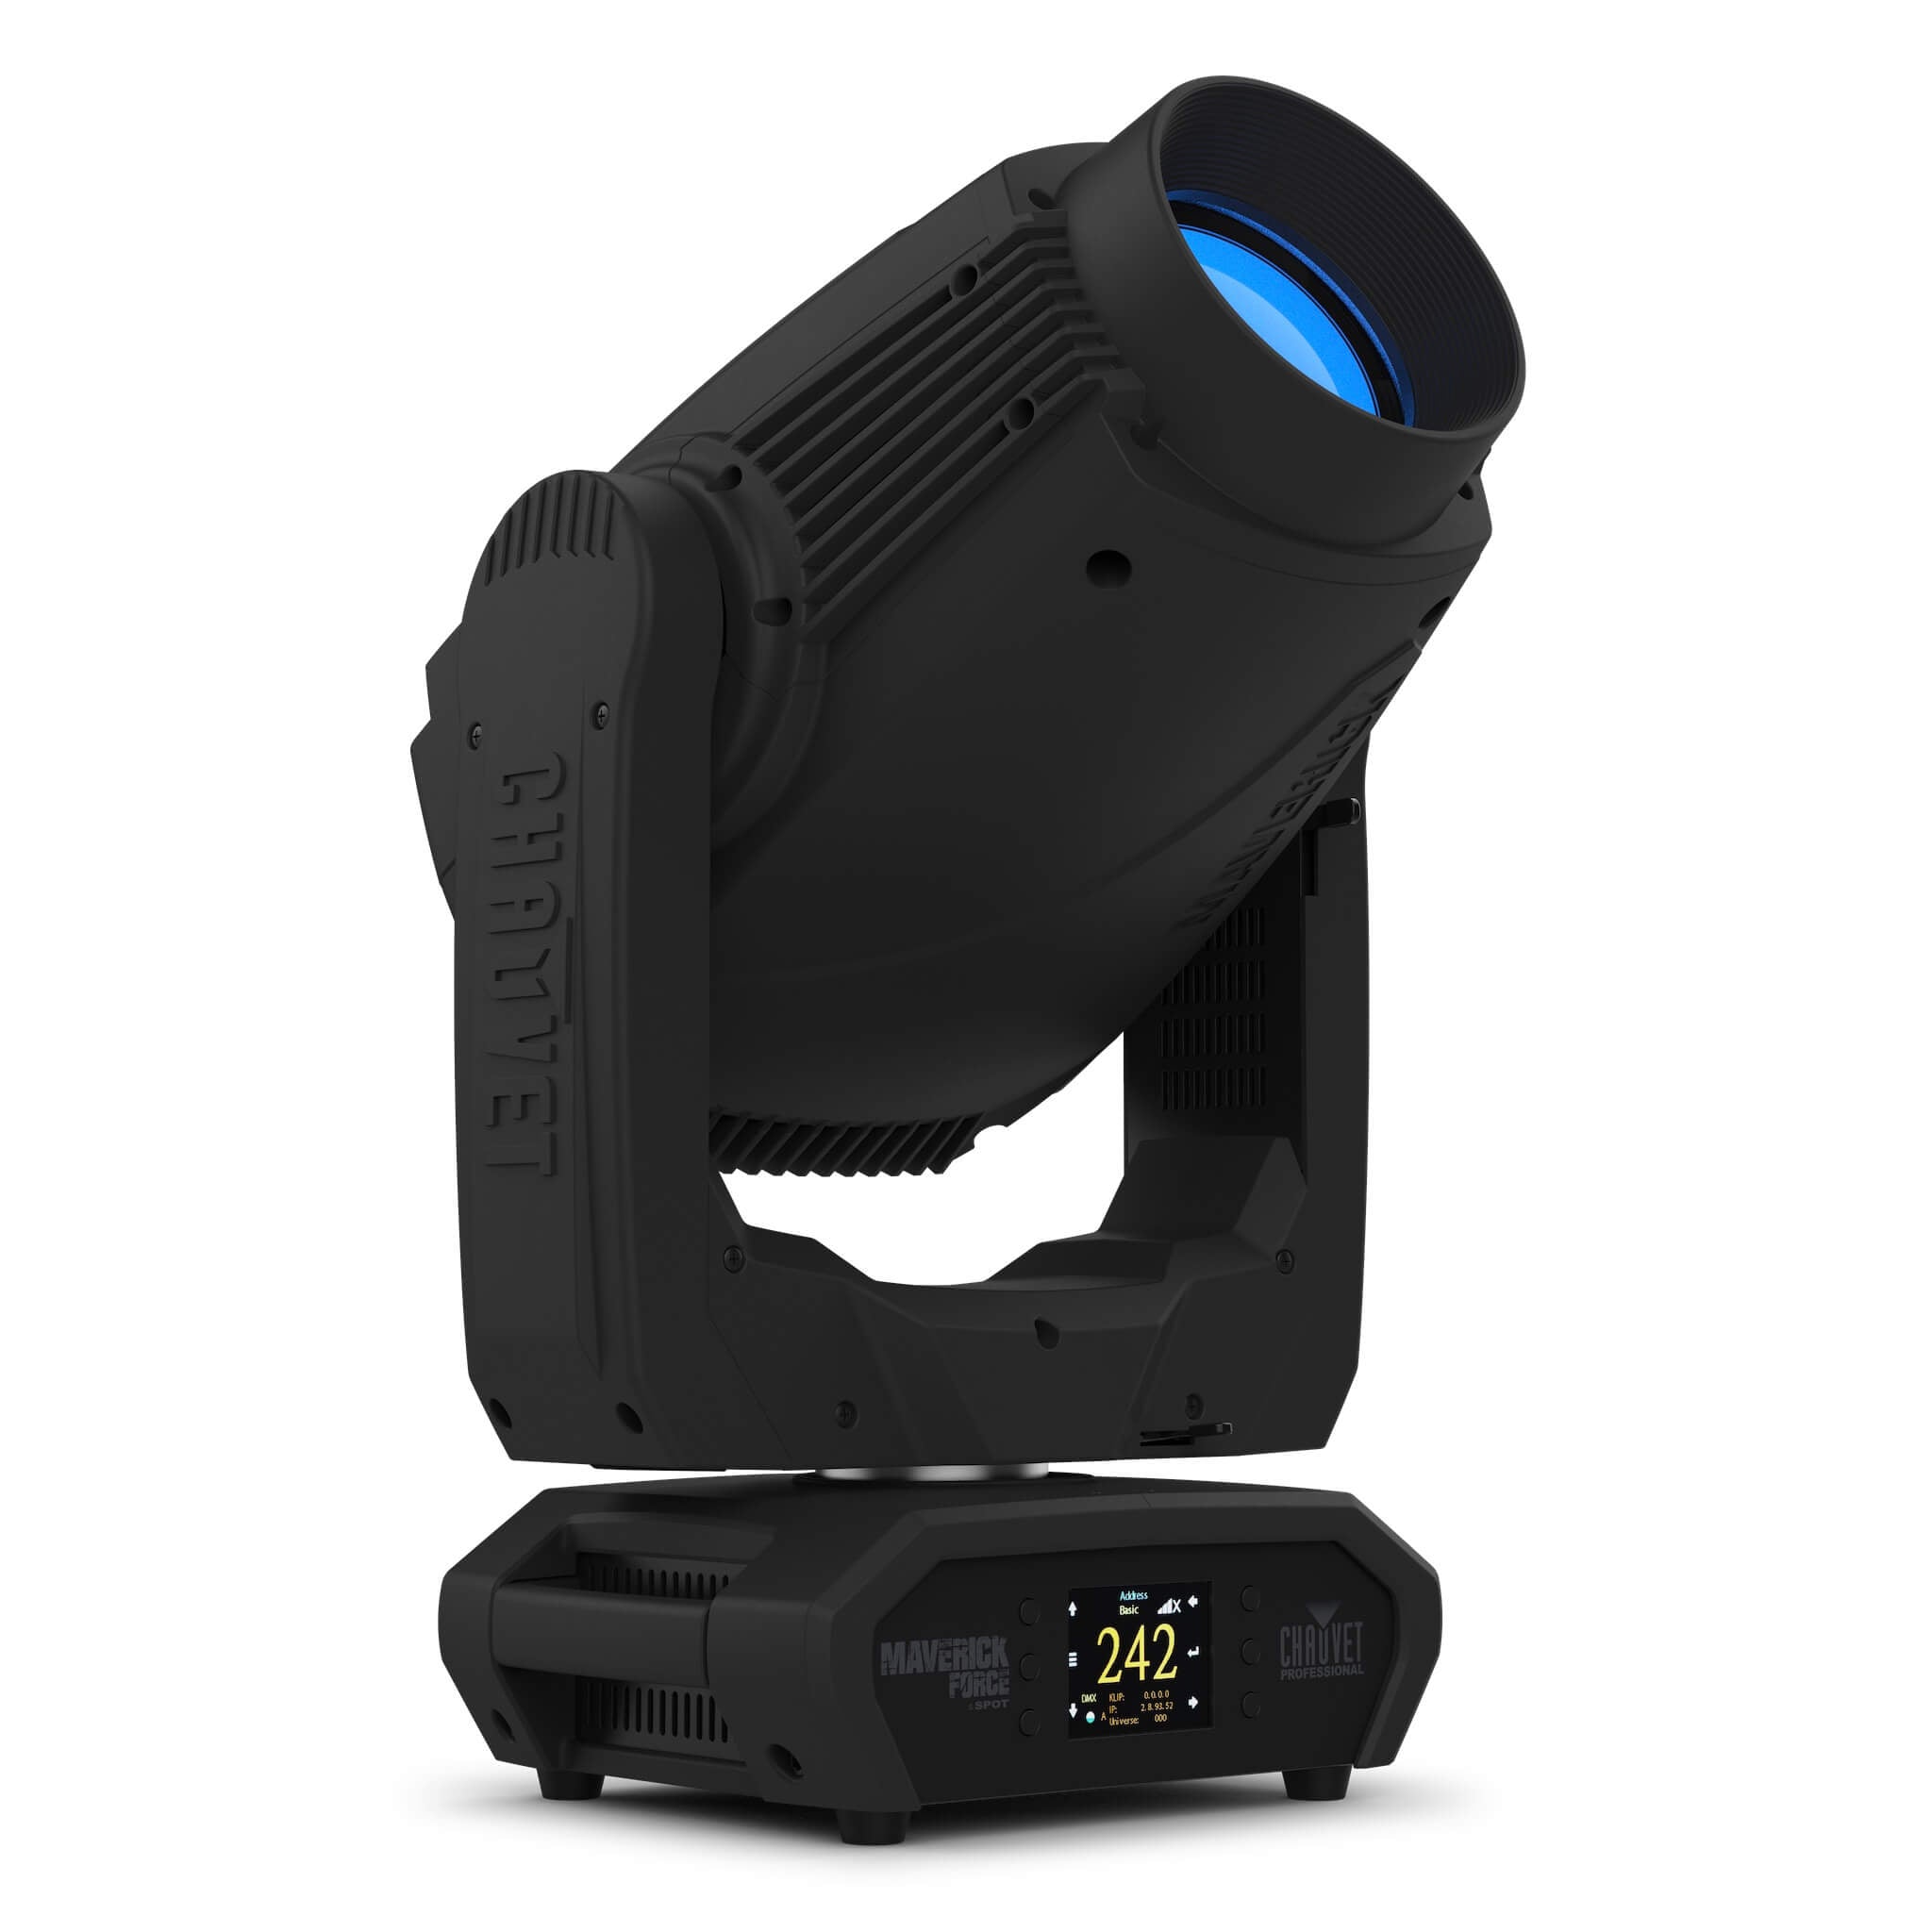 Chauvet Professional Maverick Force S Spot - LED Moving Head Light, right